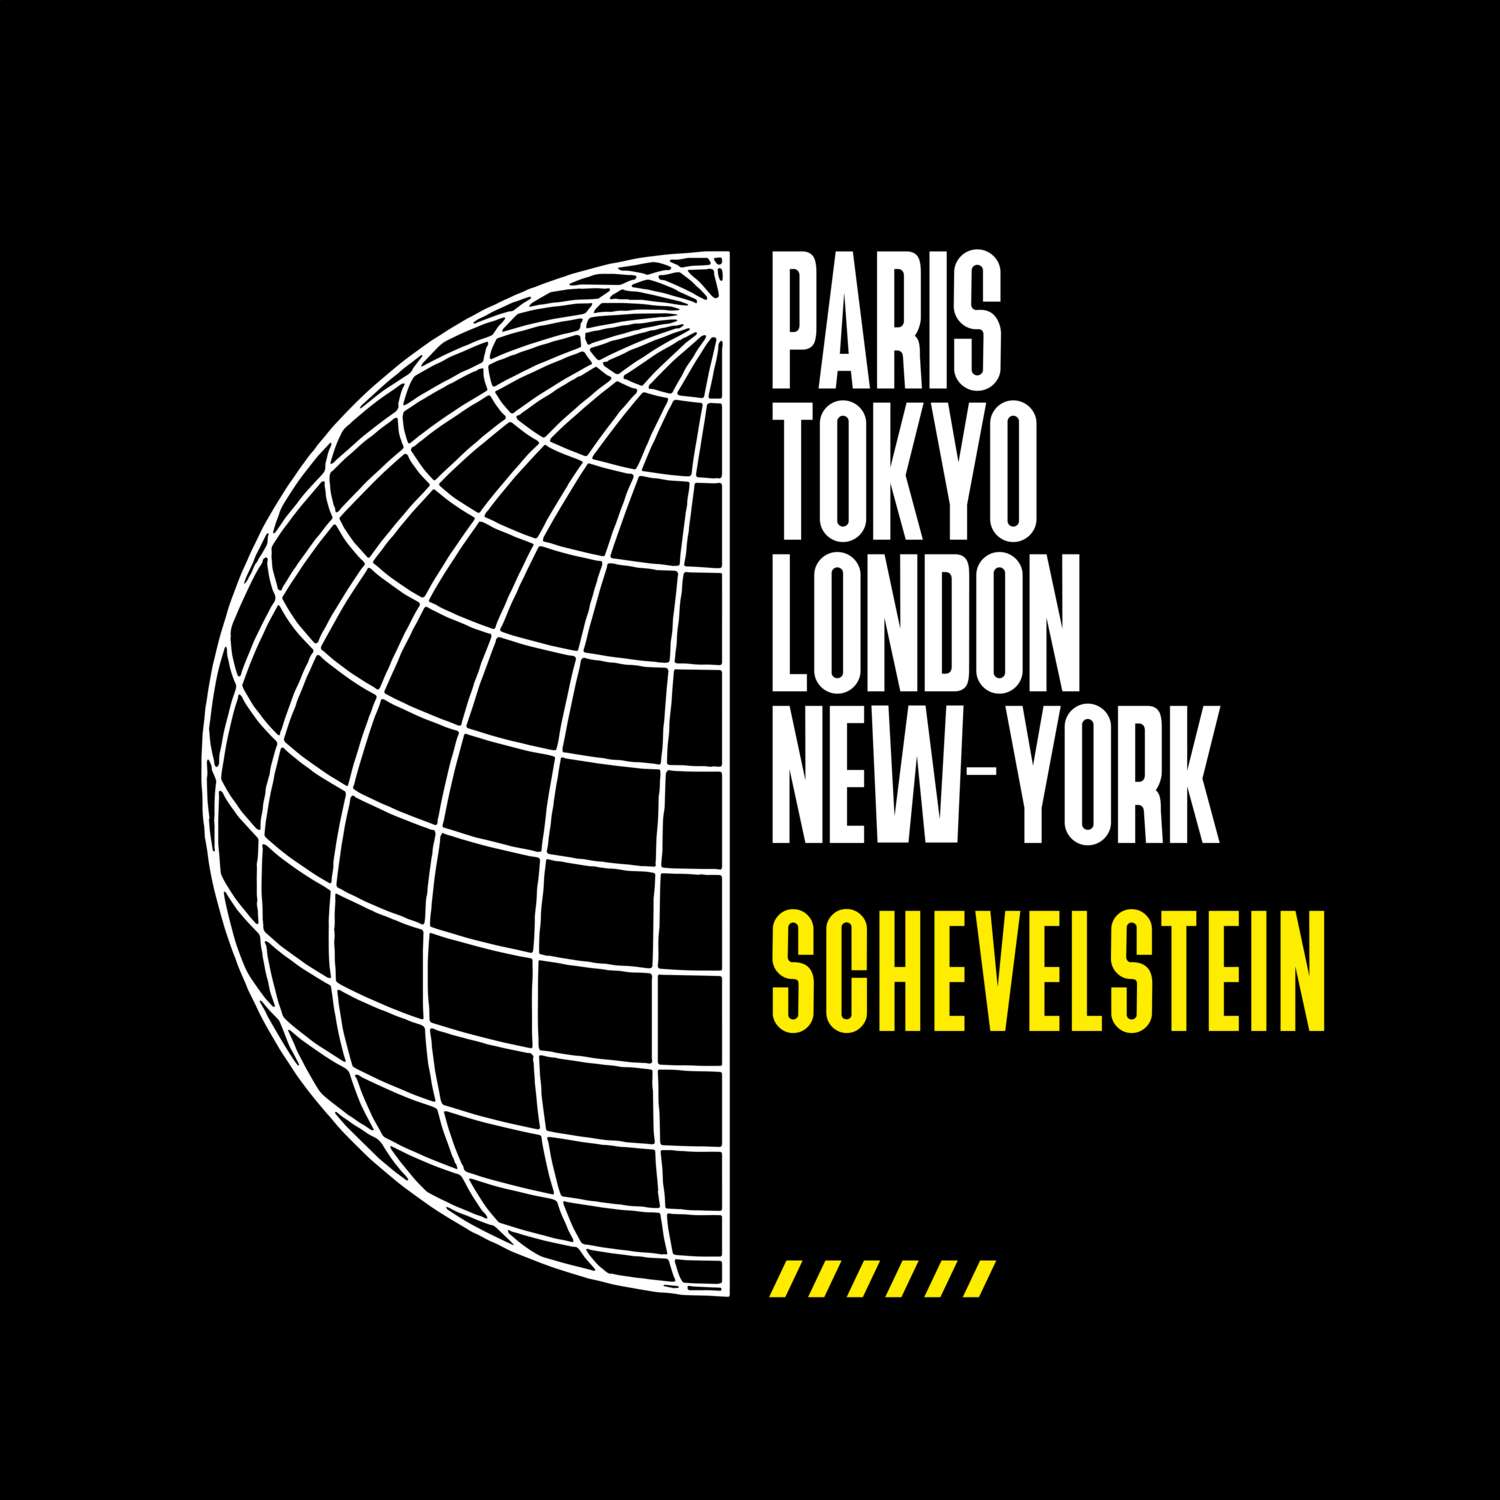 Schevelstein T-Shirt »Paris Tokyo London«